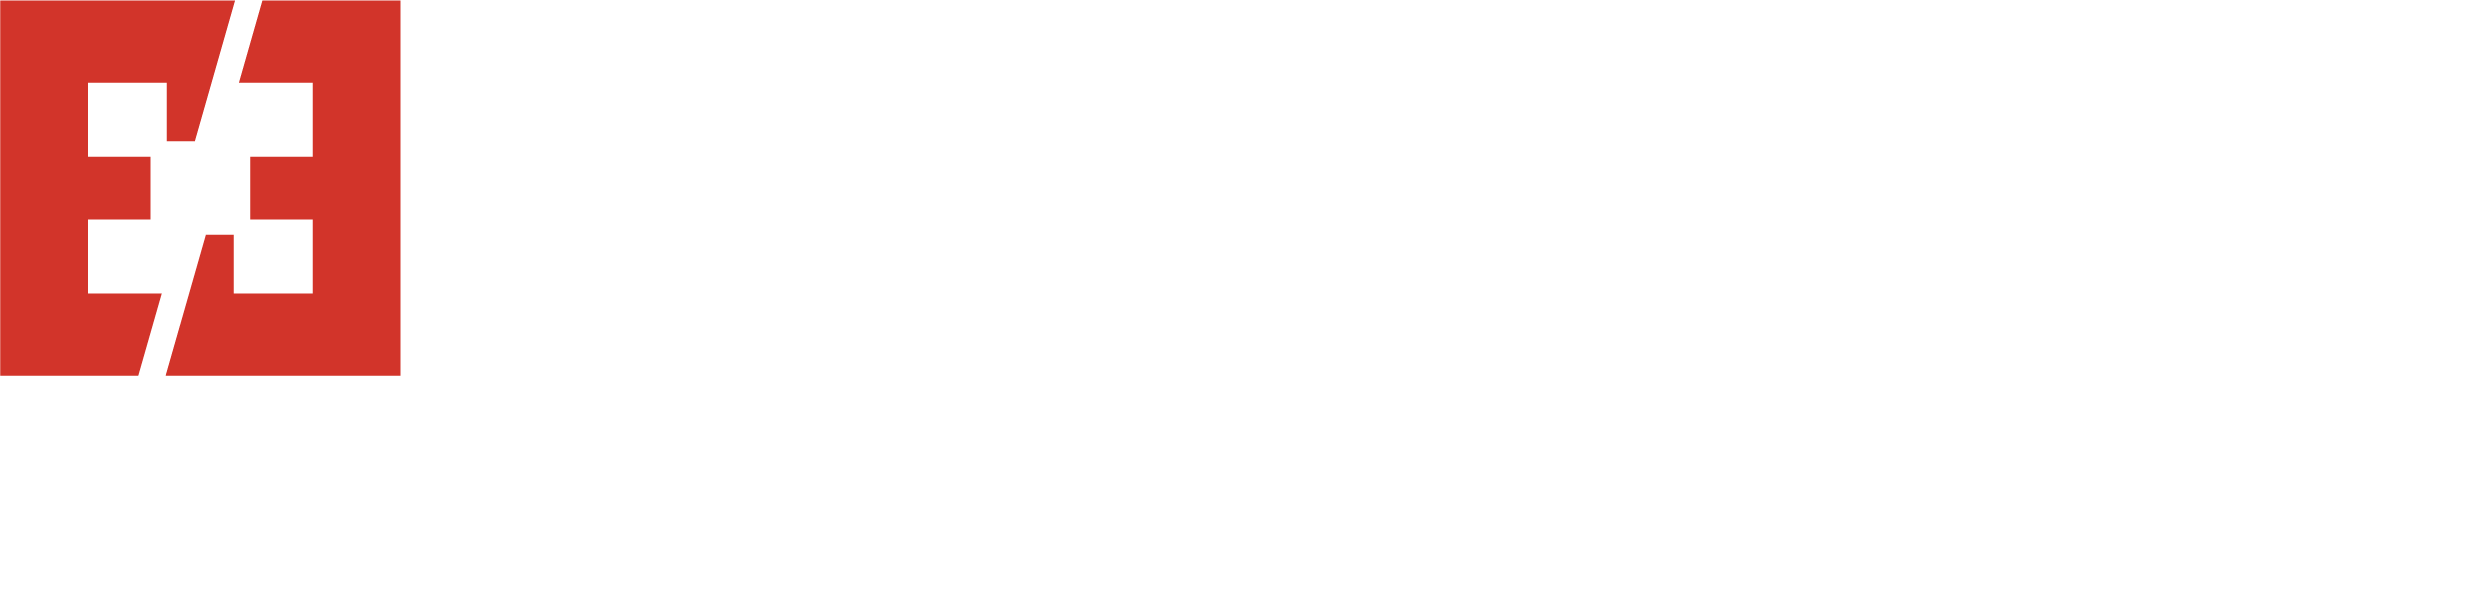 Evalex Contracting Corporation